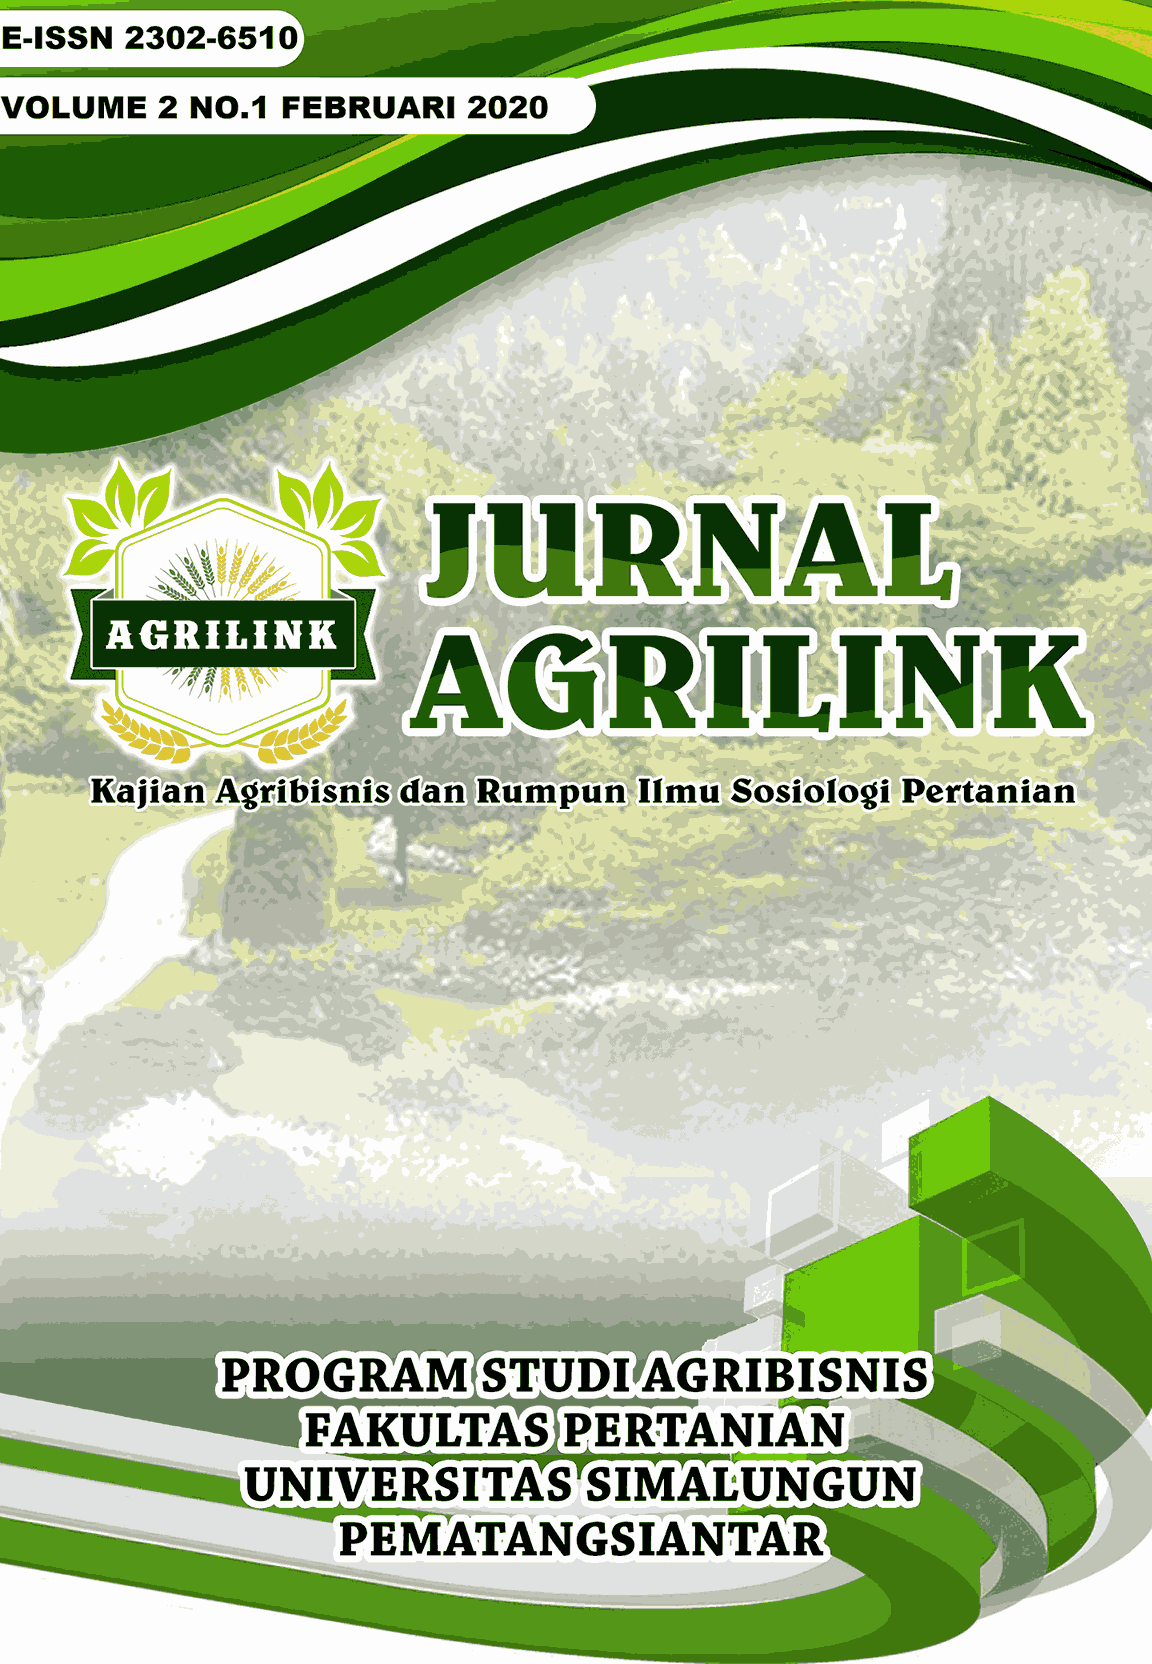 					View Vol. 2 No. 1 (2020): Jurnal Agrilink Vol 2 No 1 Februari 2020
				